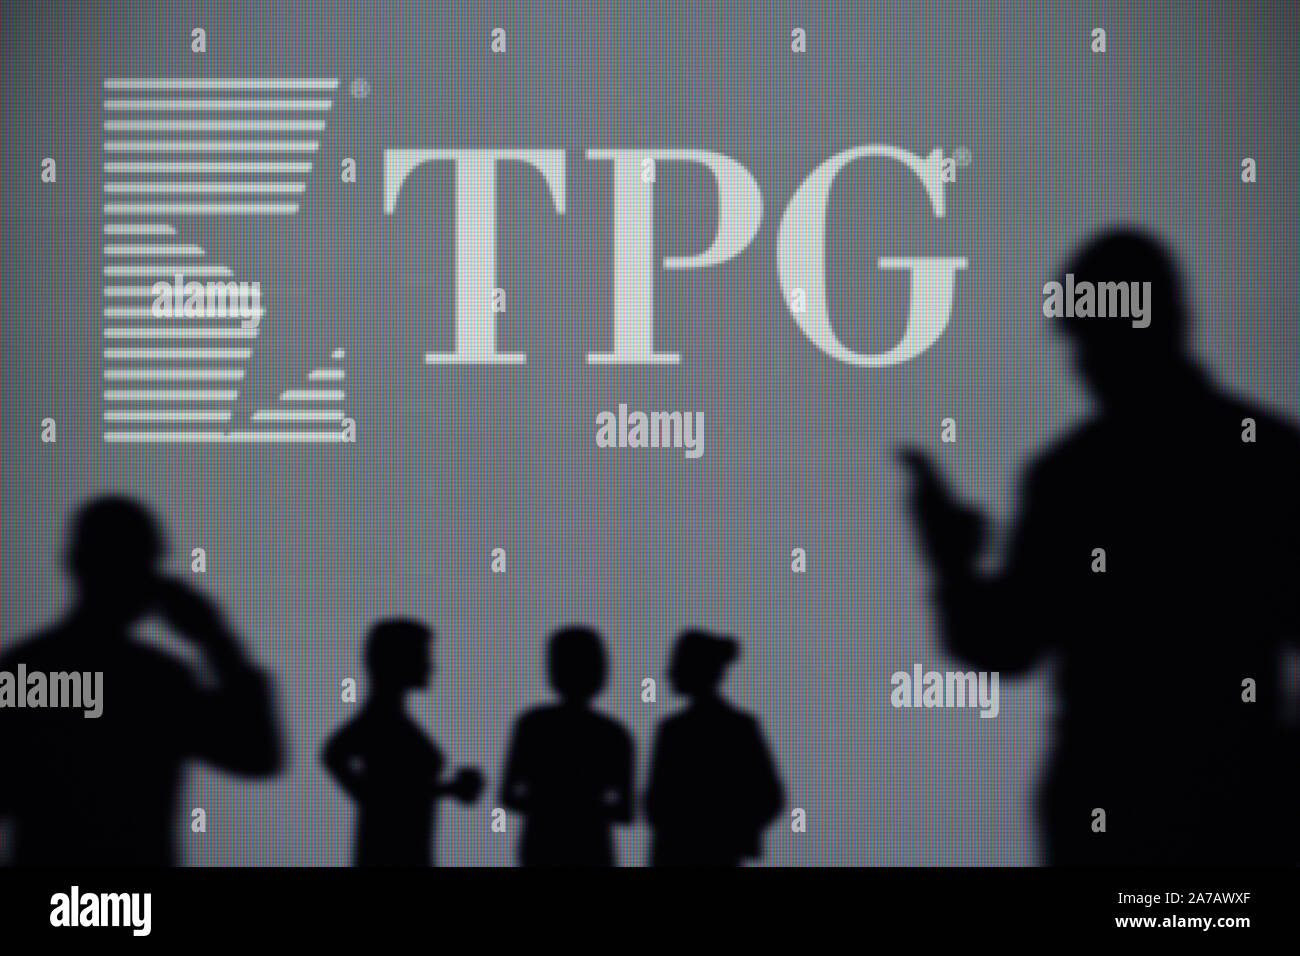 Le TPG Capital logo est visible sur un écran LED à l'arrière-plan tandis qu'une silhouette personne utilise un smartphone (usage éditorial uniquement) Banque D'Images